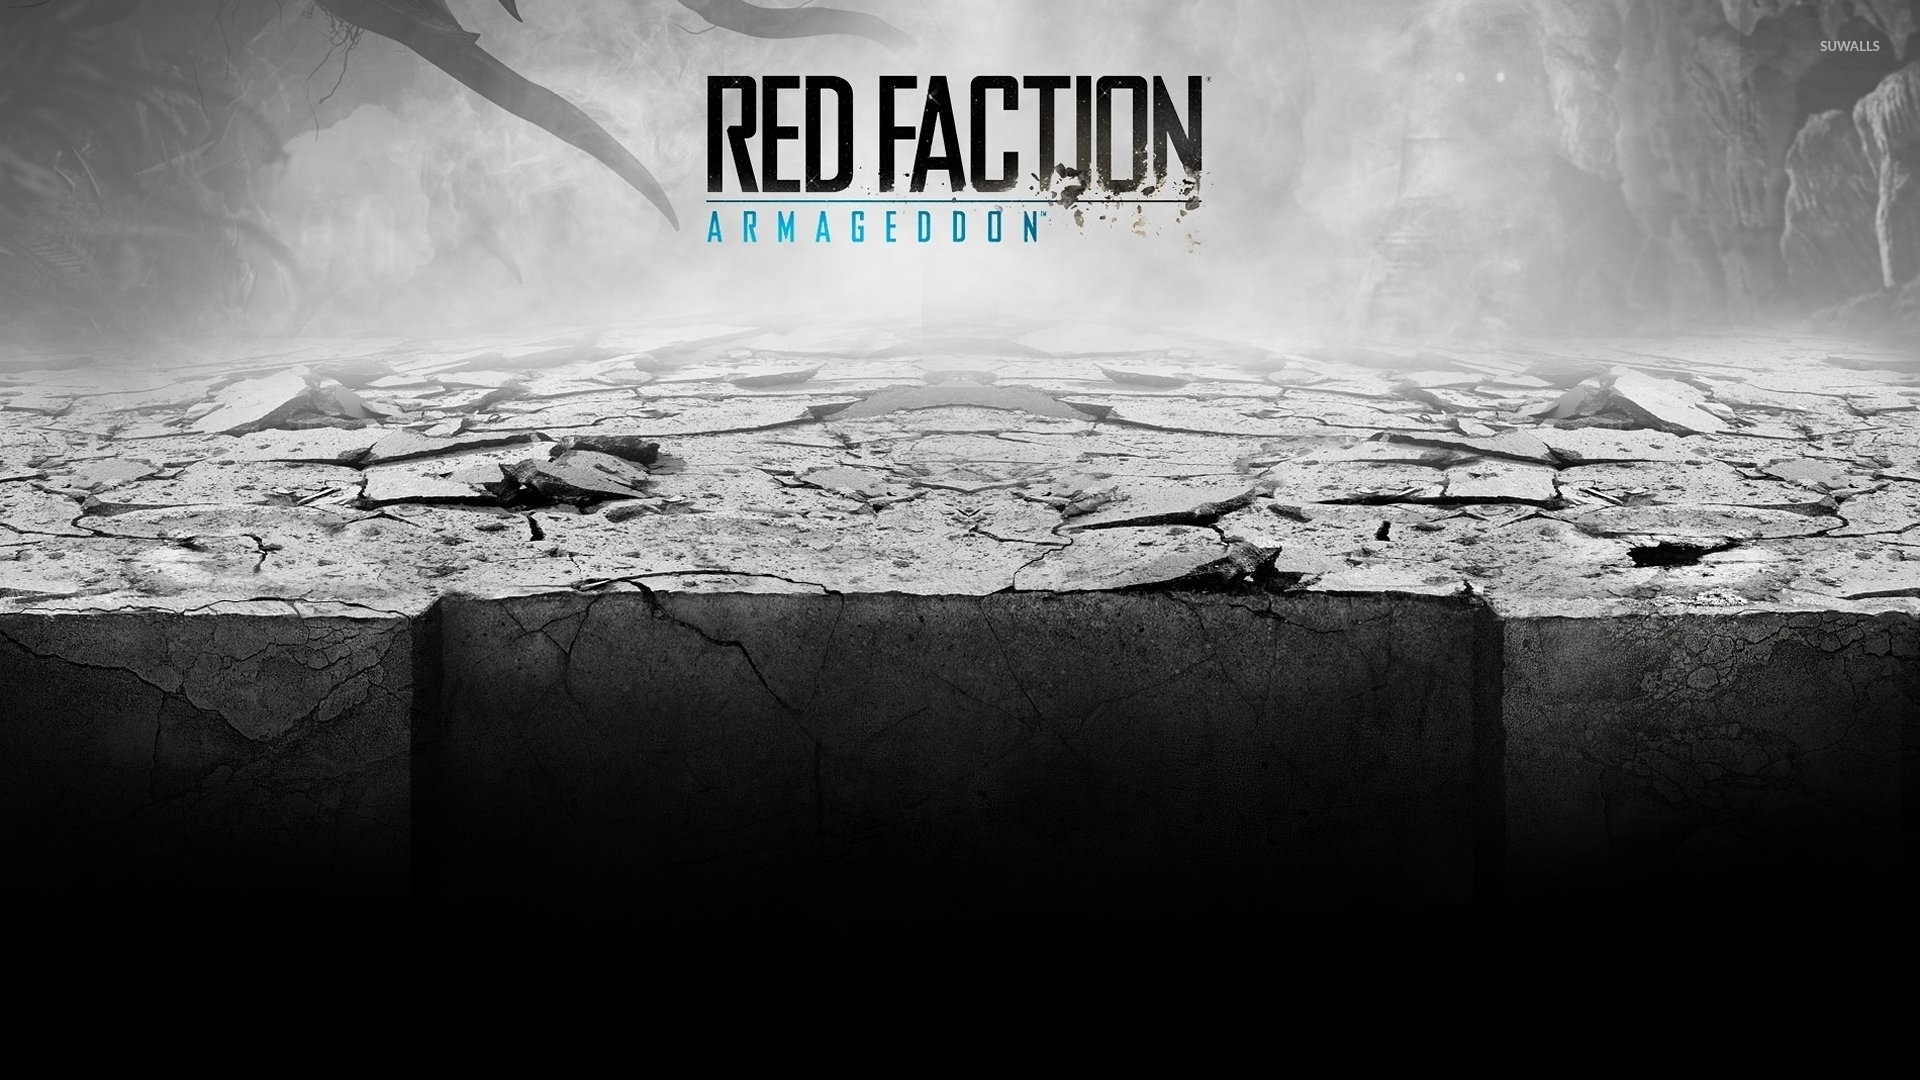 Red Faction Armageddon Wallpaper Game